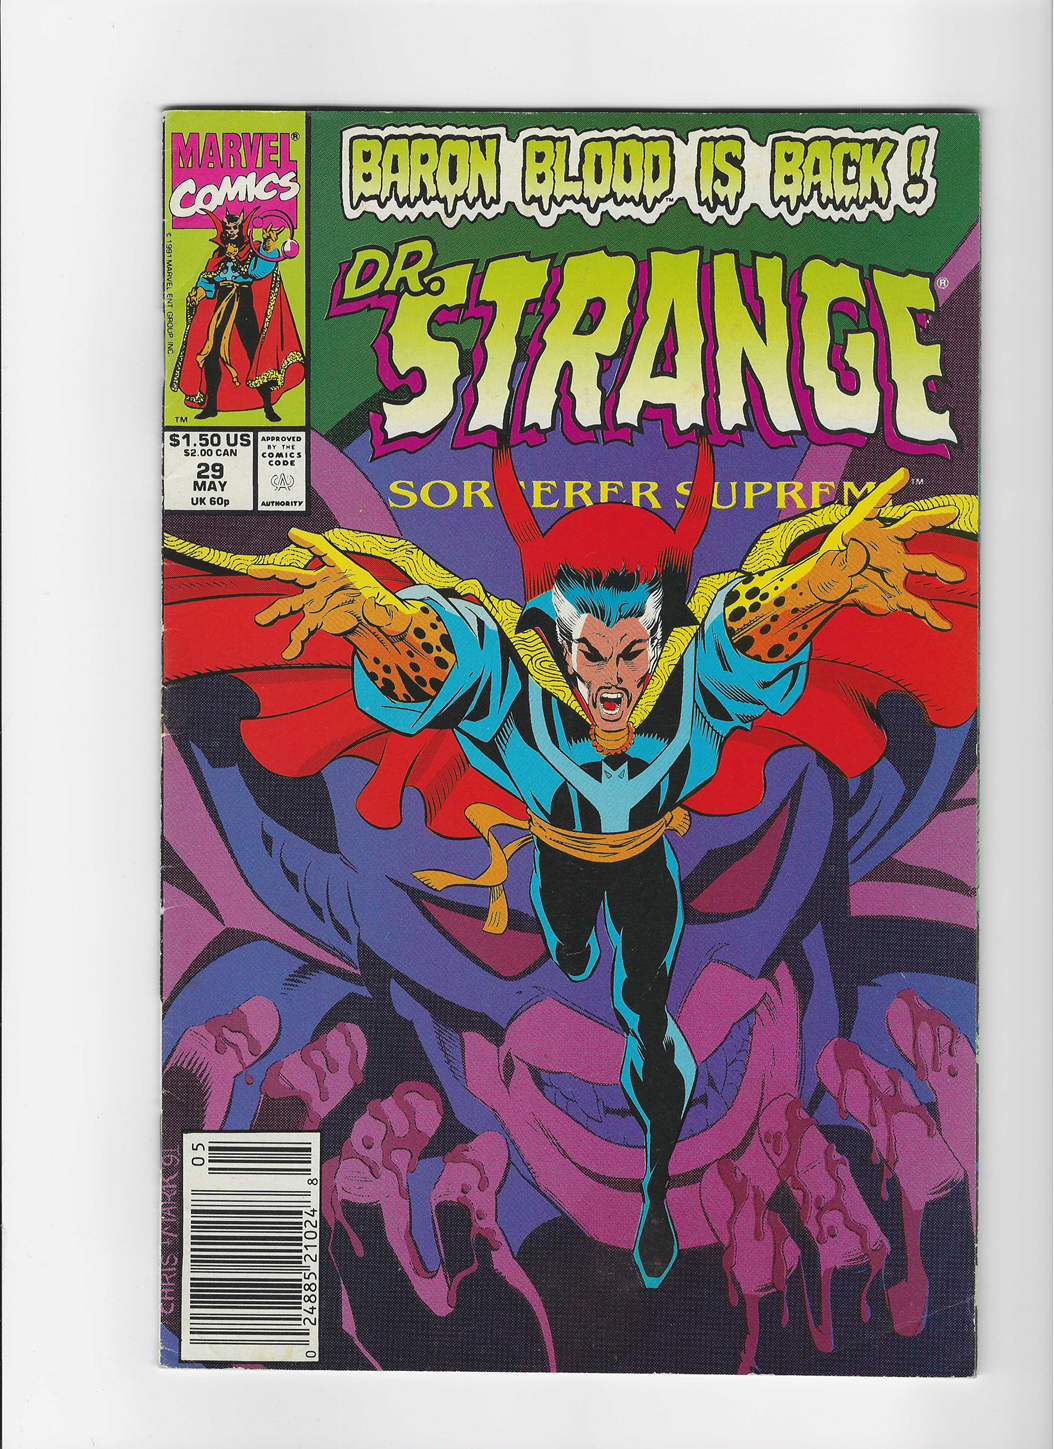 Doctor Strange: Sorcerer Supreme, Vol. 1 #29